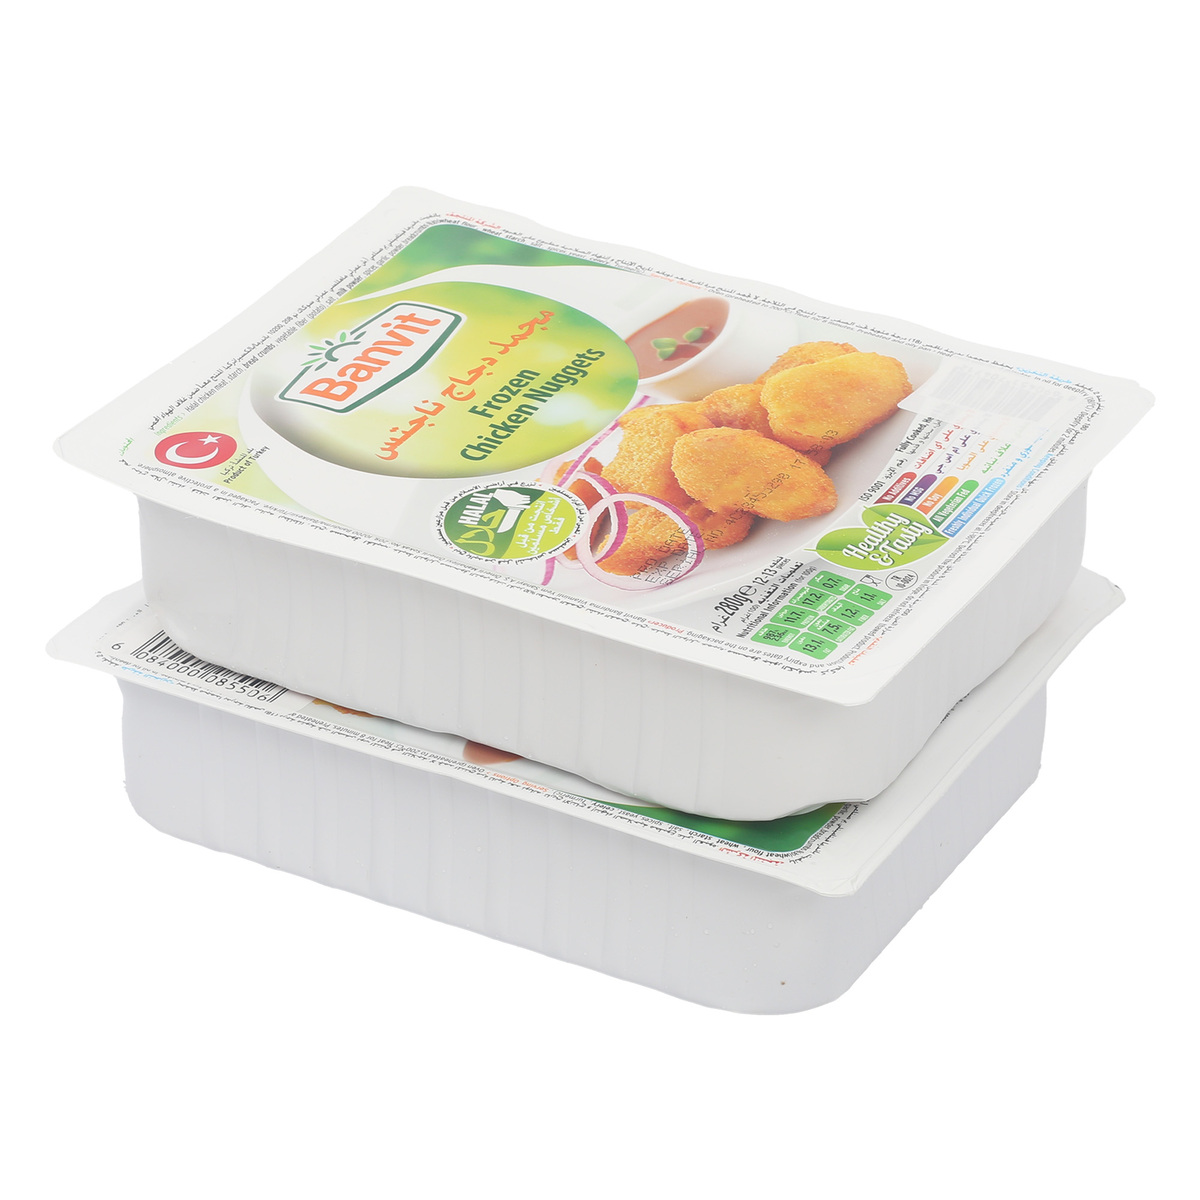 Banvit Frozen Chicken Nuggets Value Pack 2 x 280 g